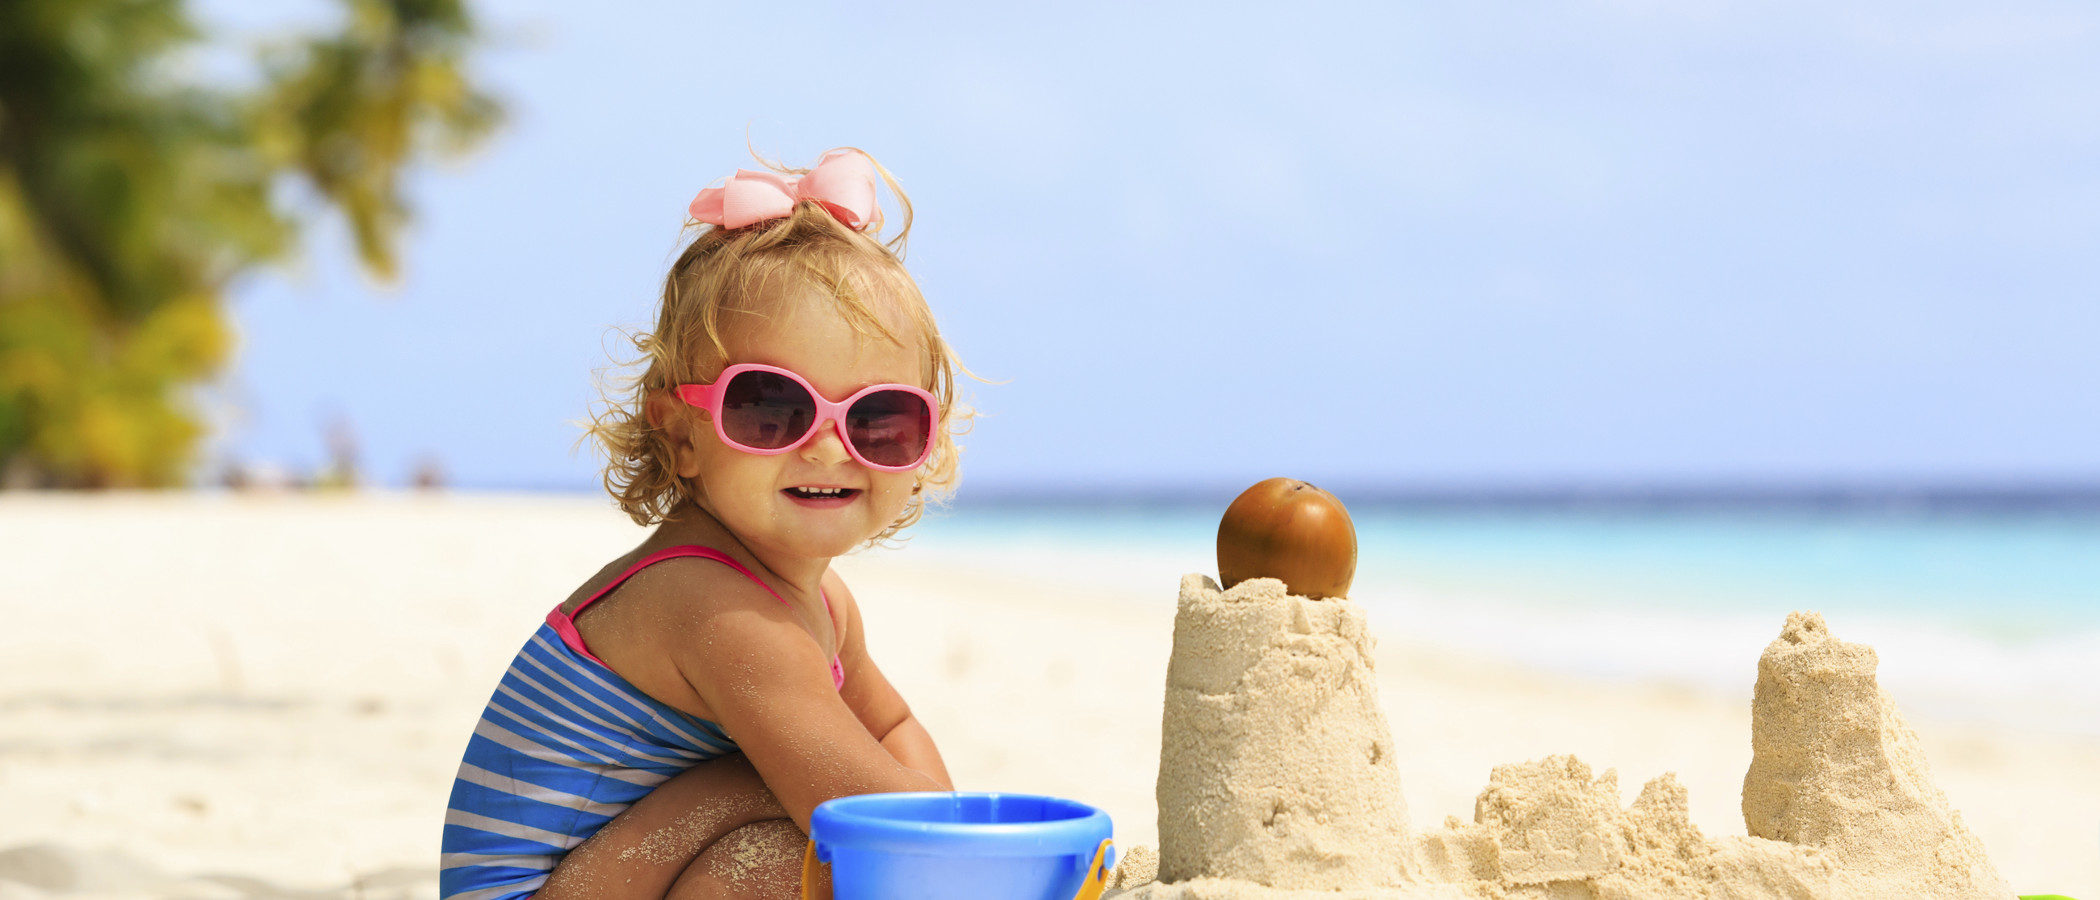 Castillos de arena y otros juegos infantiles para divertirse en la playa